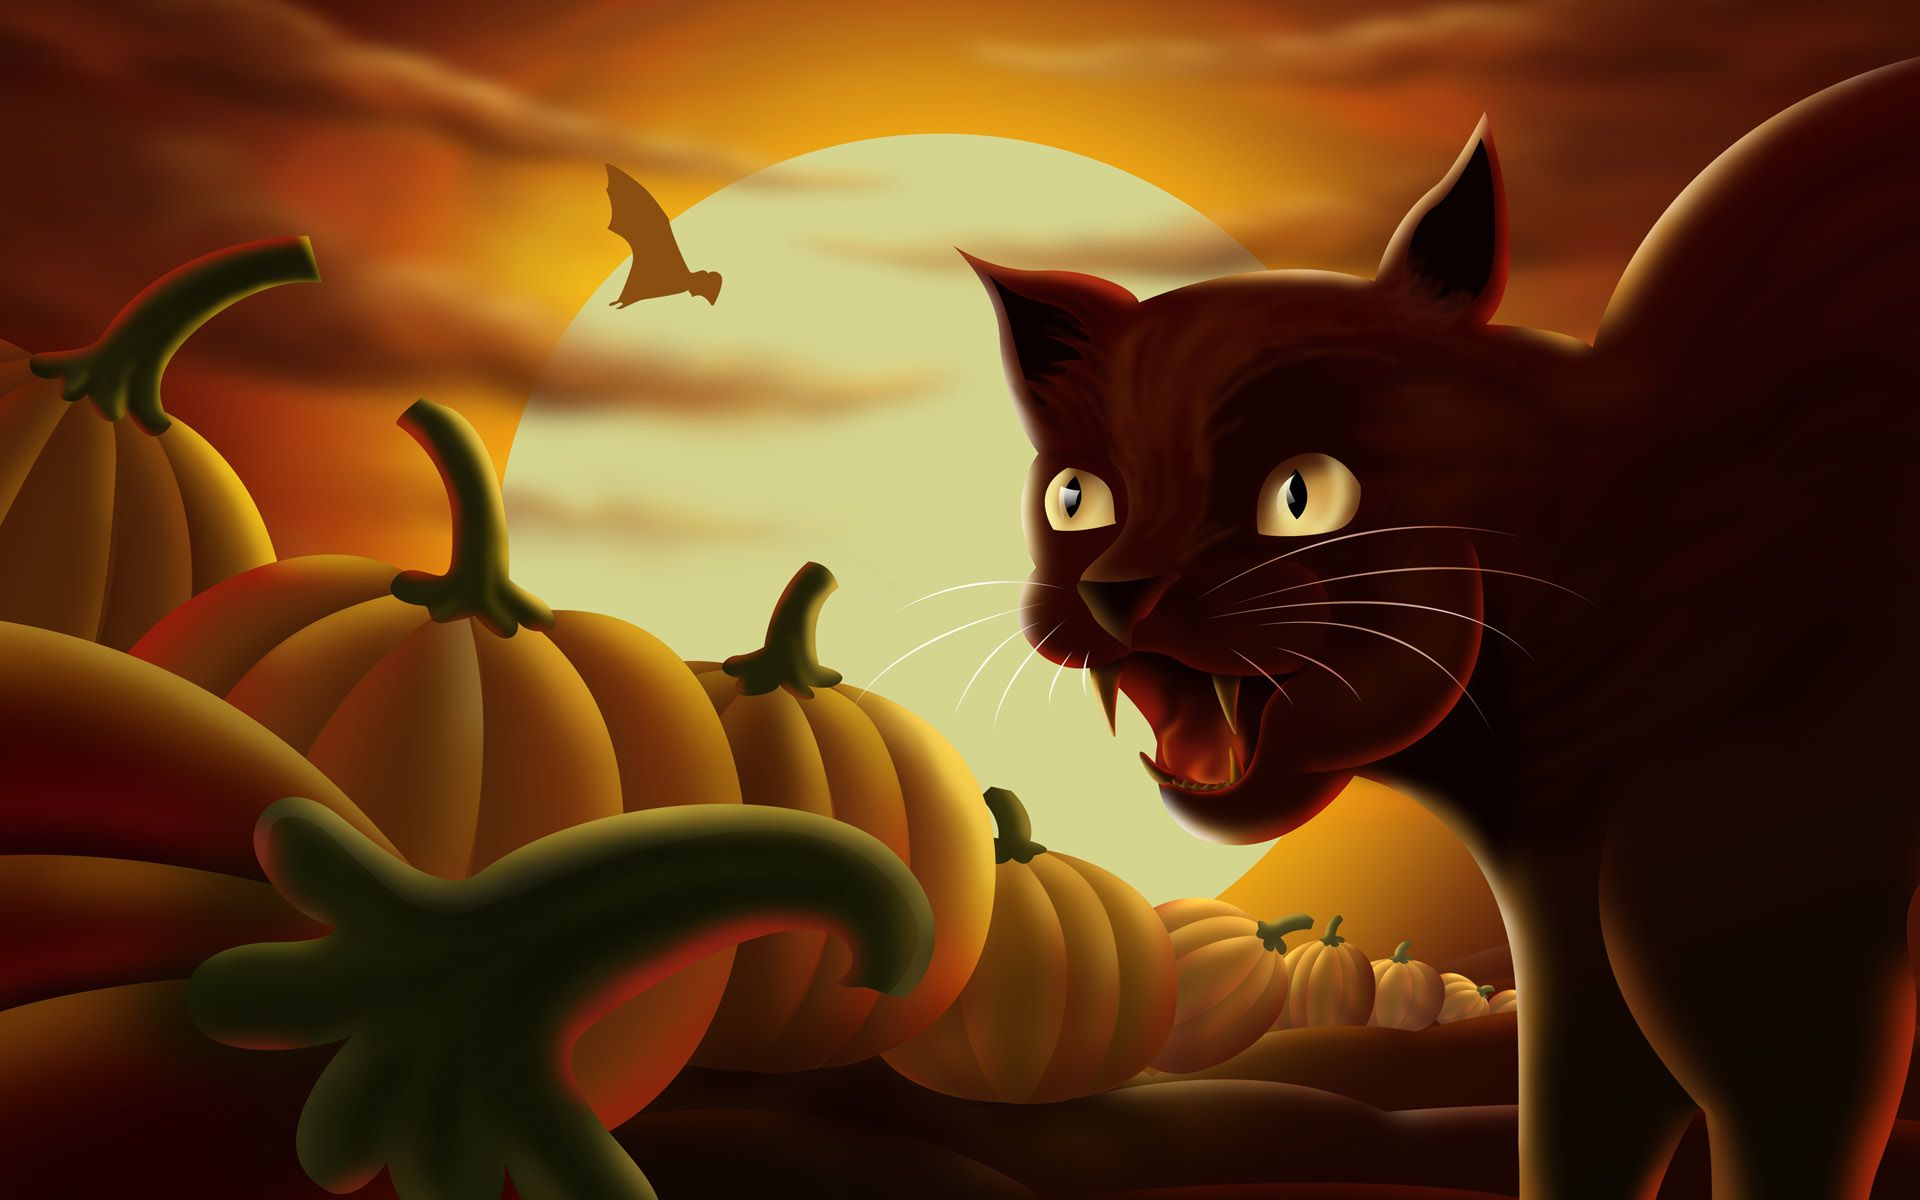 Black cat and lots of pumpkins